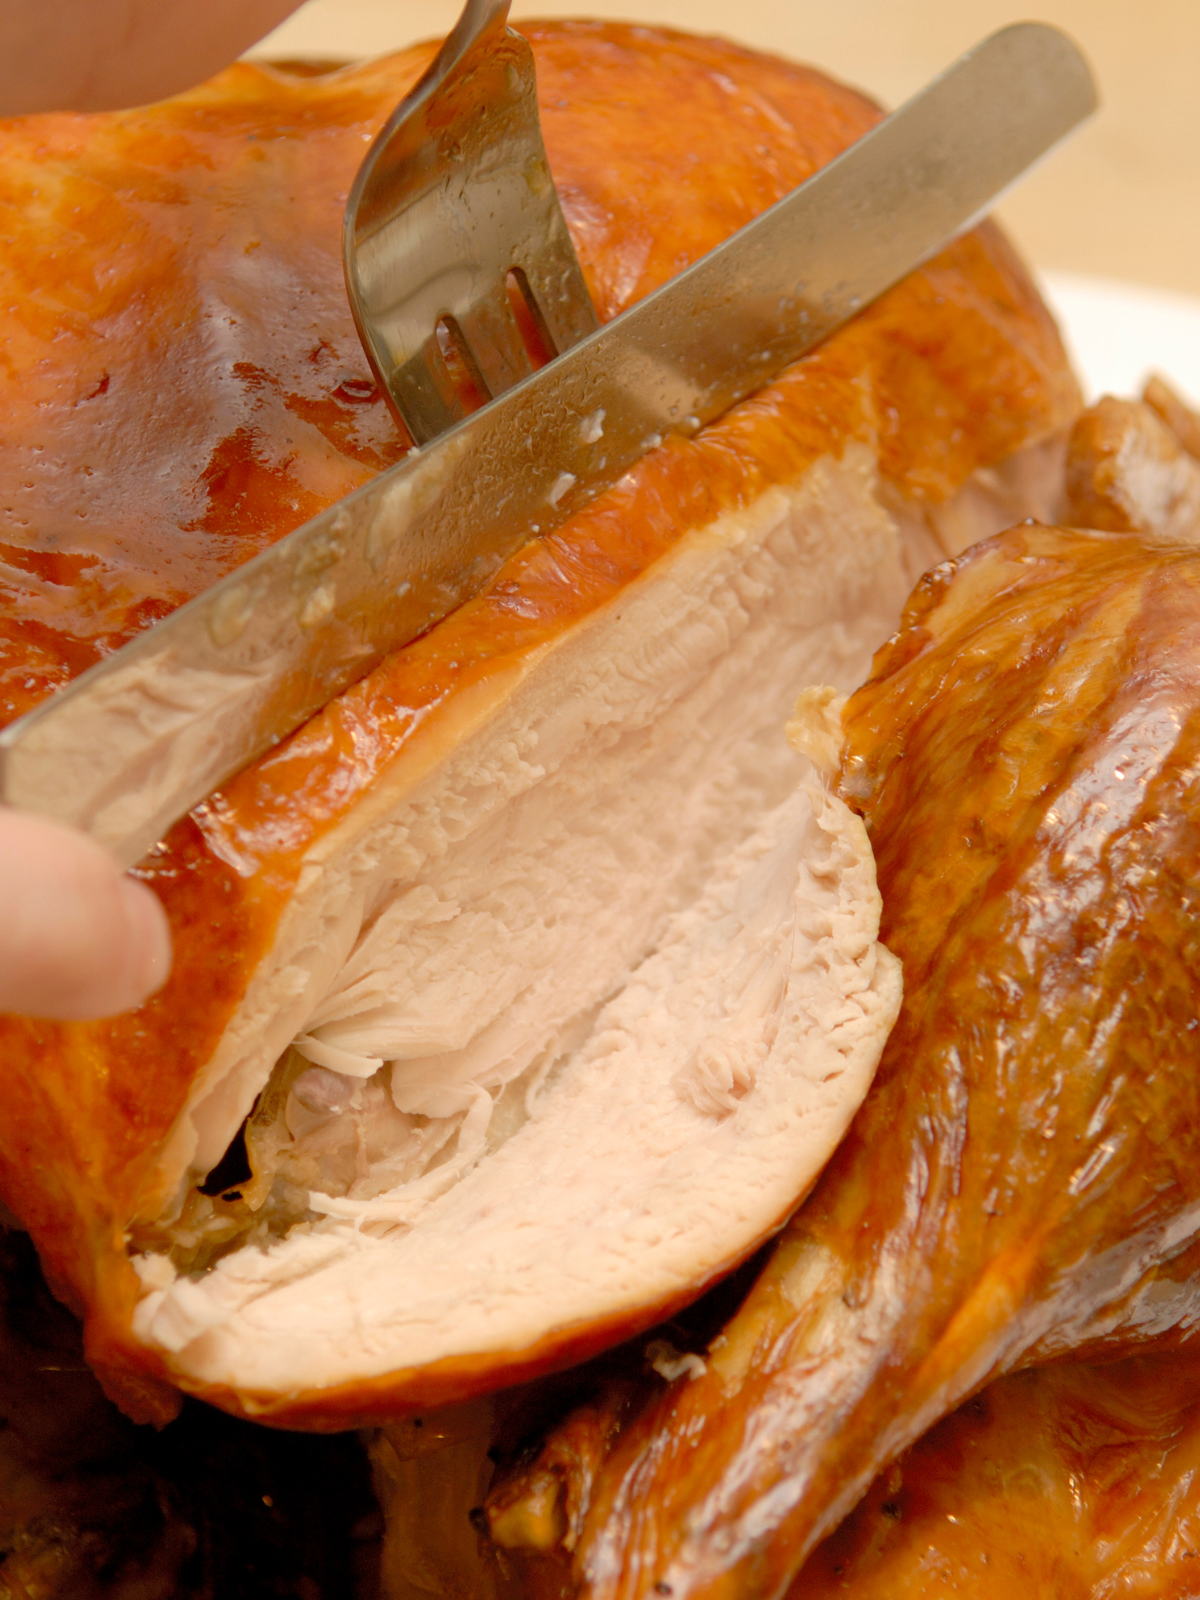 Slicing a 12 pound turkey to serve.